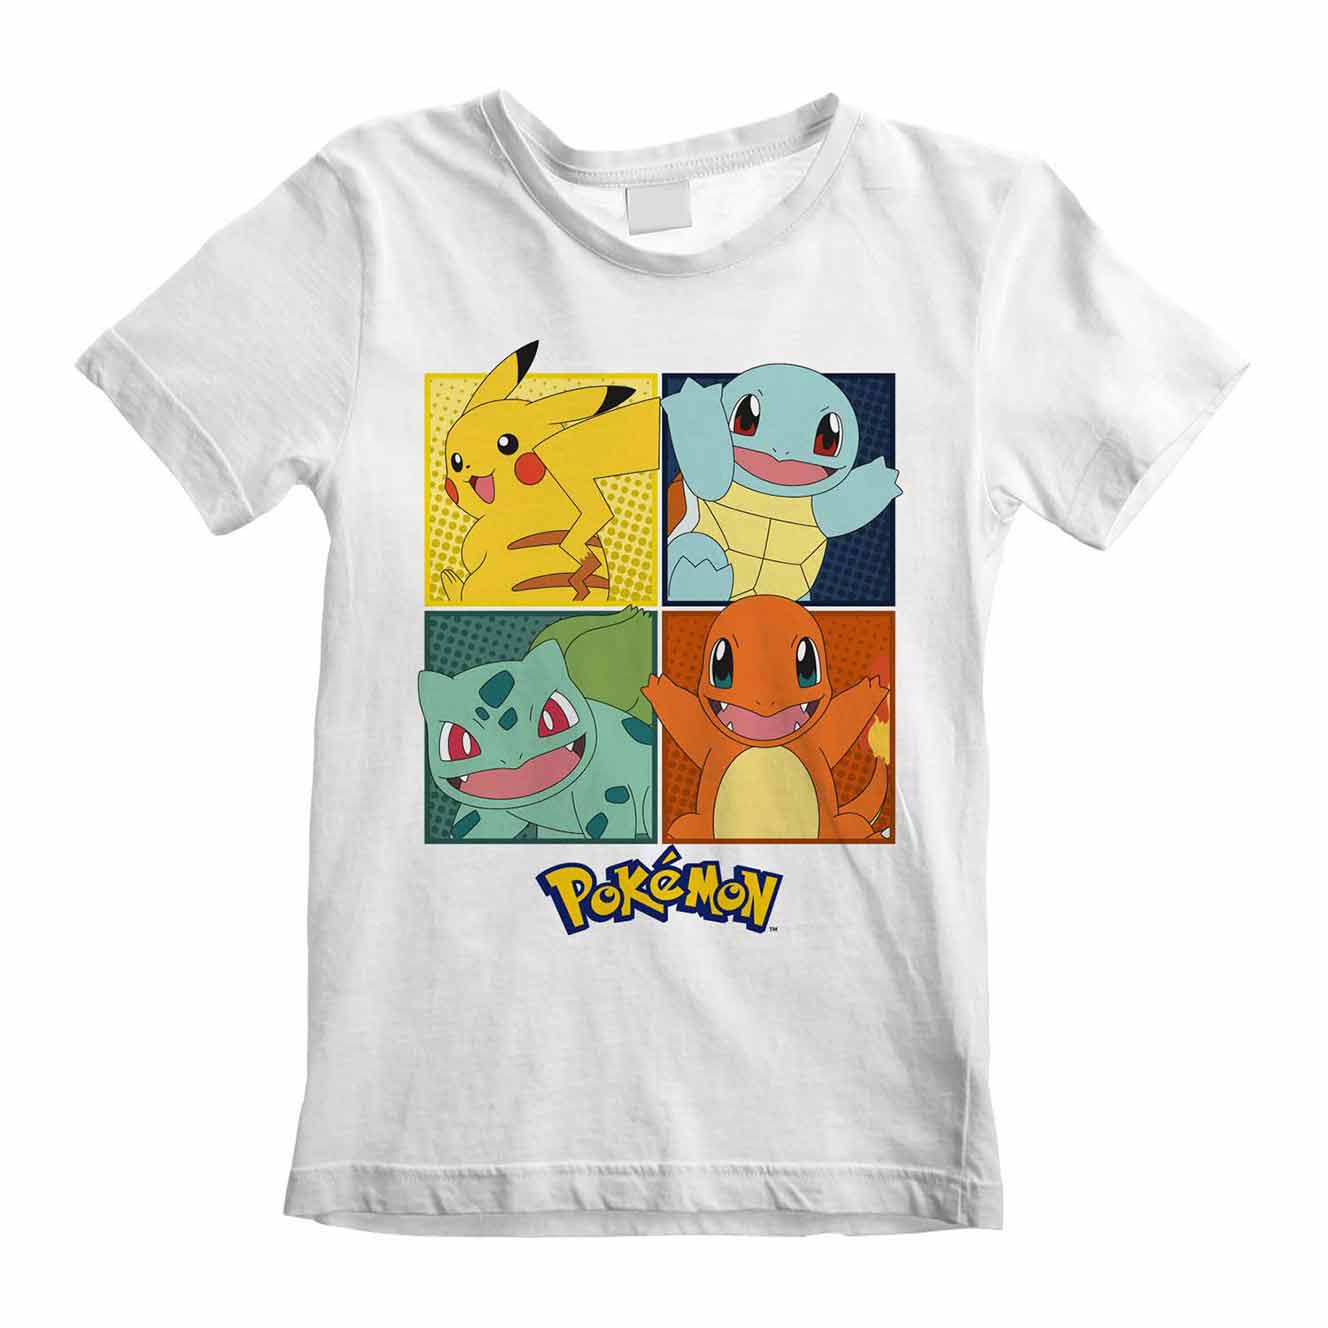 Hvid Pokémon t-shirt til børn med Pikachu, Squirtle, Bulbasaur og Charmander trykt på brystet